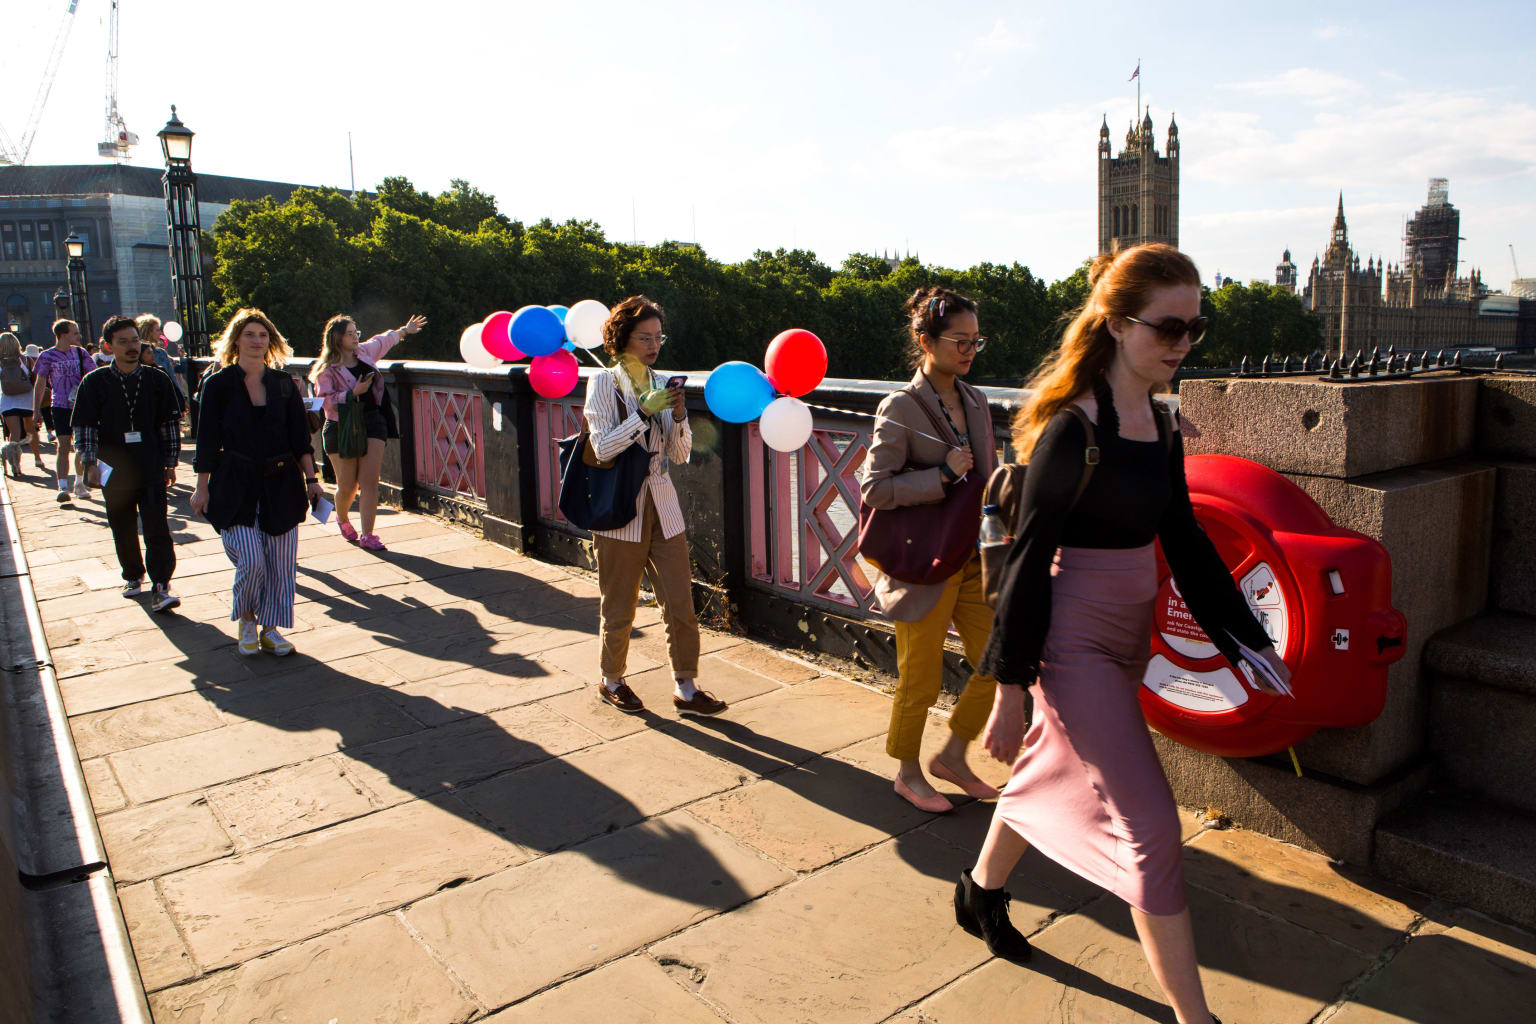 Group of women walking across a bridge in London.